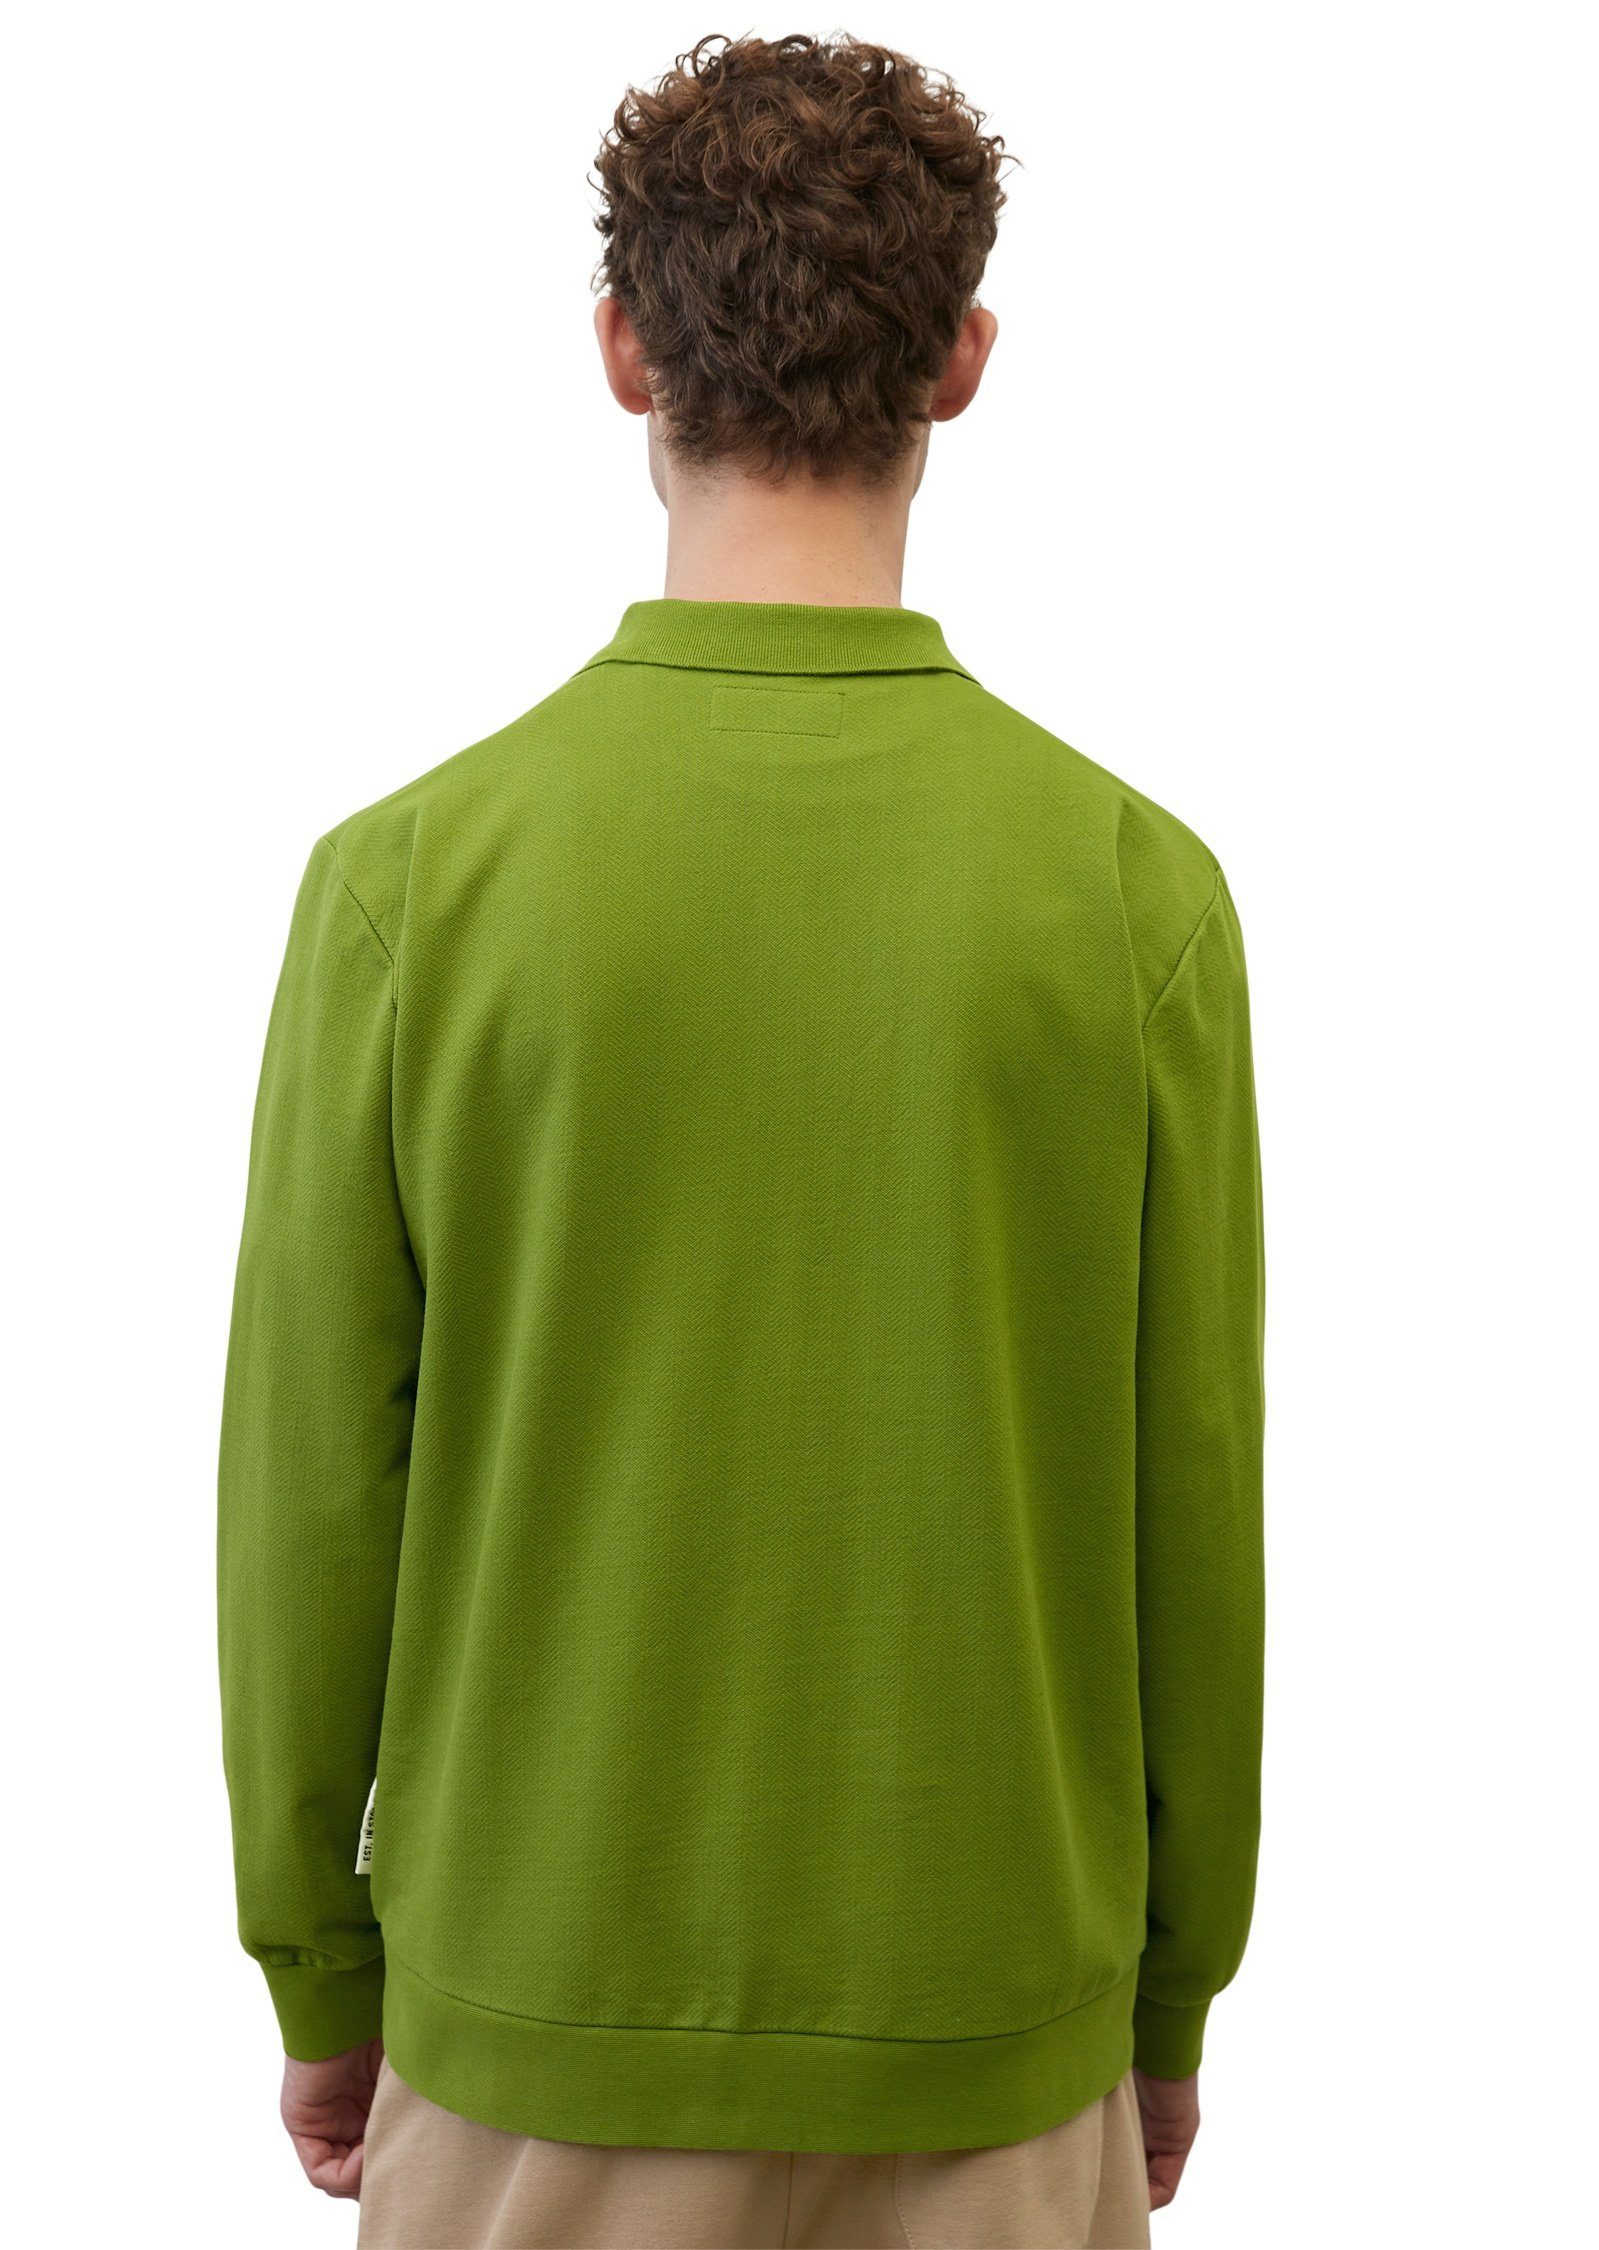 Marc O'Polo Sweatshirt mit grün hochwertigem Fischgrat-Muster